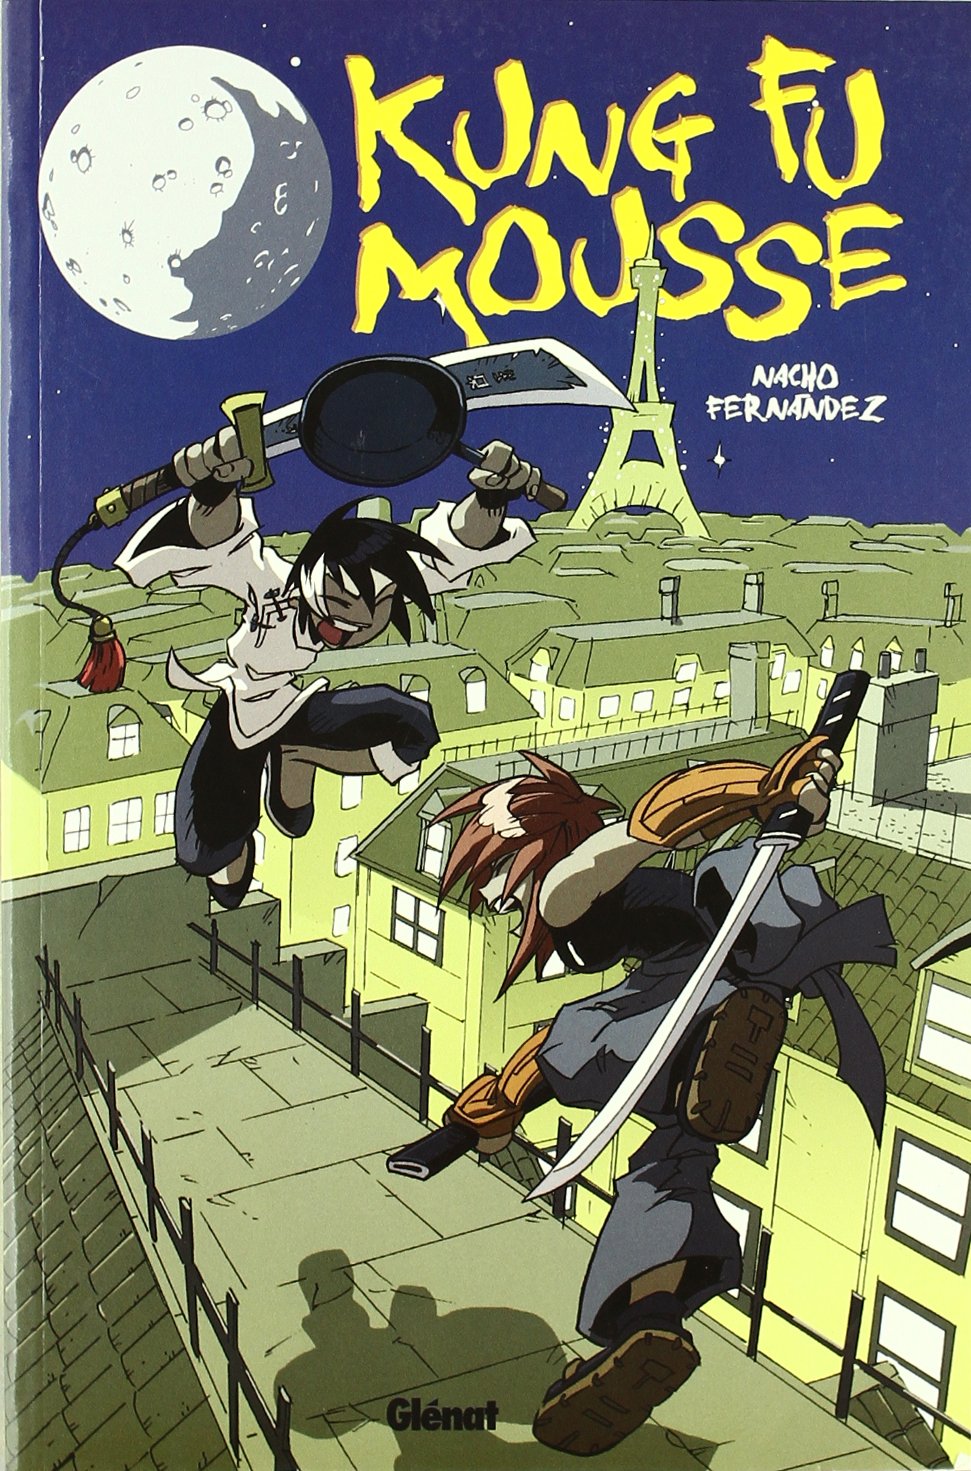 Kung-Fu Mousse - Mousse de kung fu 1